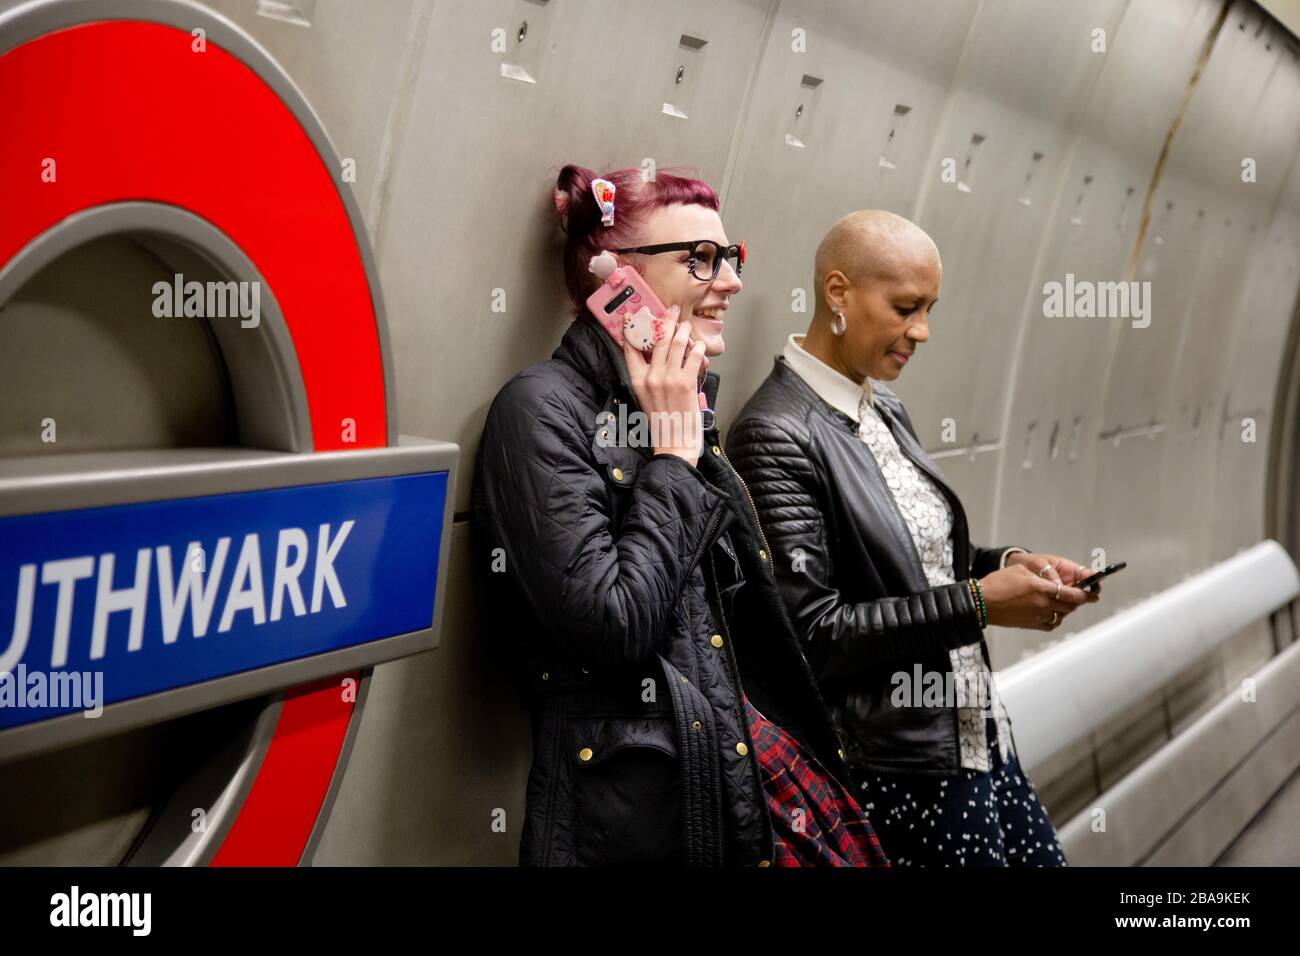 Un homme fait un appel téléphonique sur la plate-forme de la station de métro Southwark, qui fait partie du métro de Londres Banque D'Images